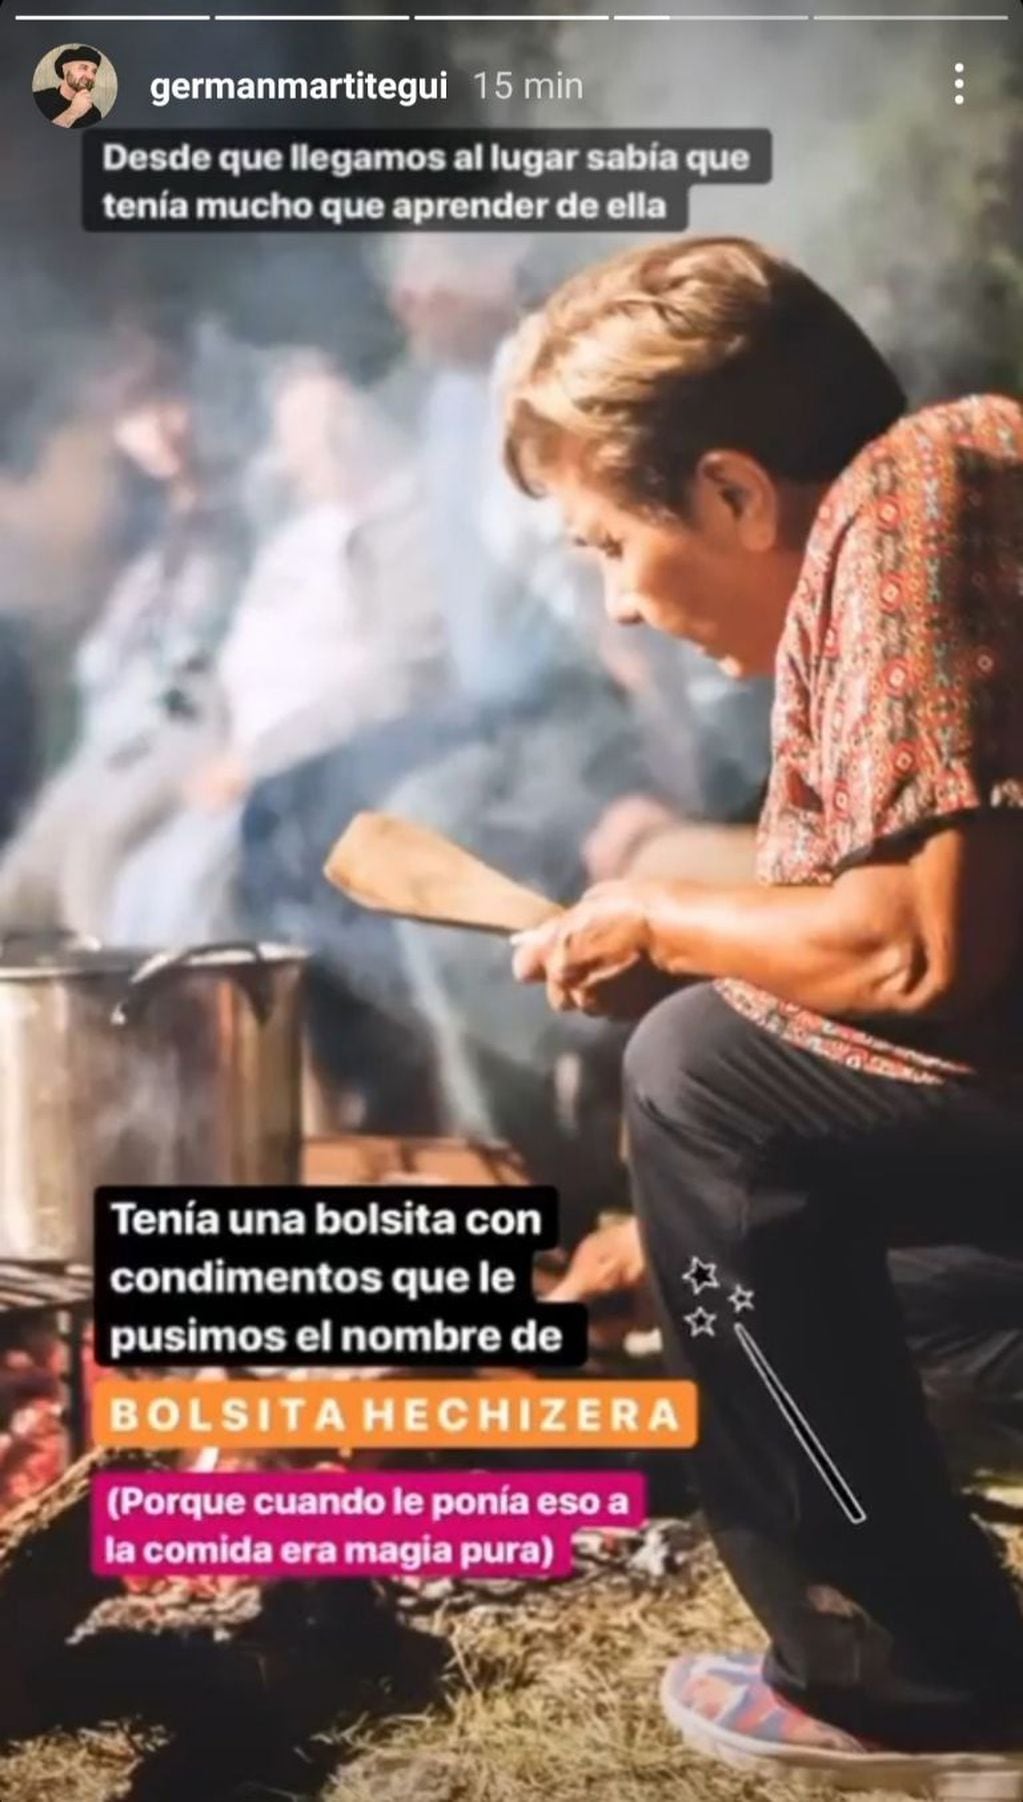 Florinda Cuenca cocinando la chanfaina. Instagram.